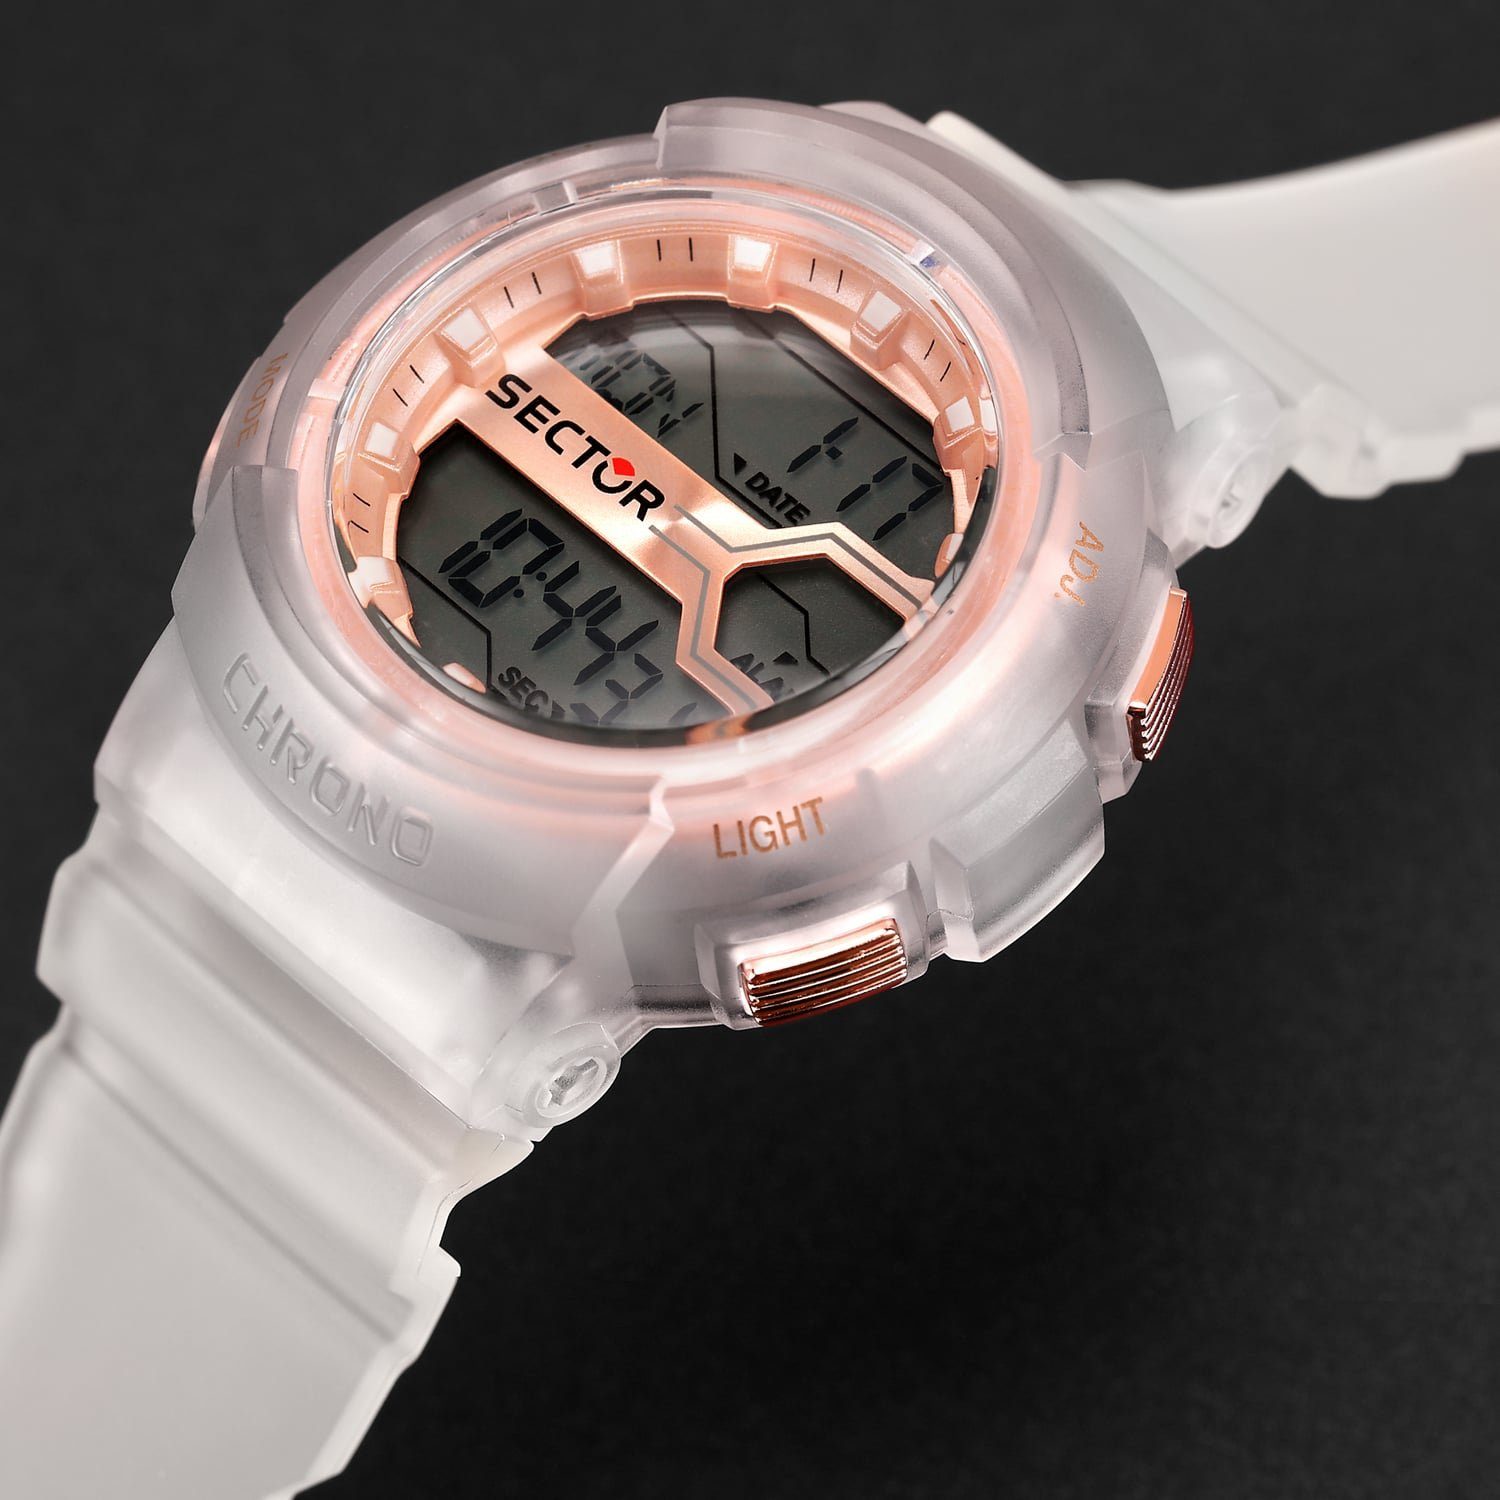 46mm), Armbanduhr Herren Sector Armbanduhr extra rund, Digital, PURarmband Sector Casual (ca. Herren Digitaluhr groß weiß,